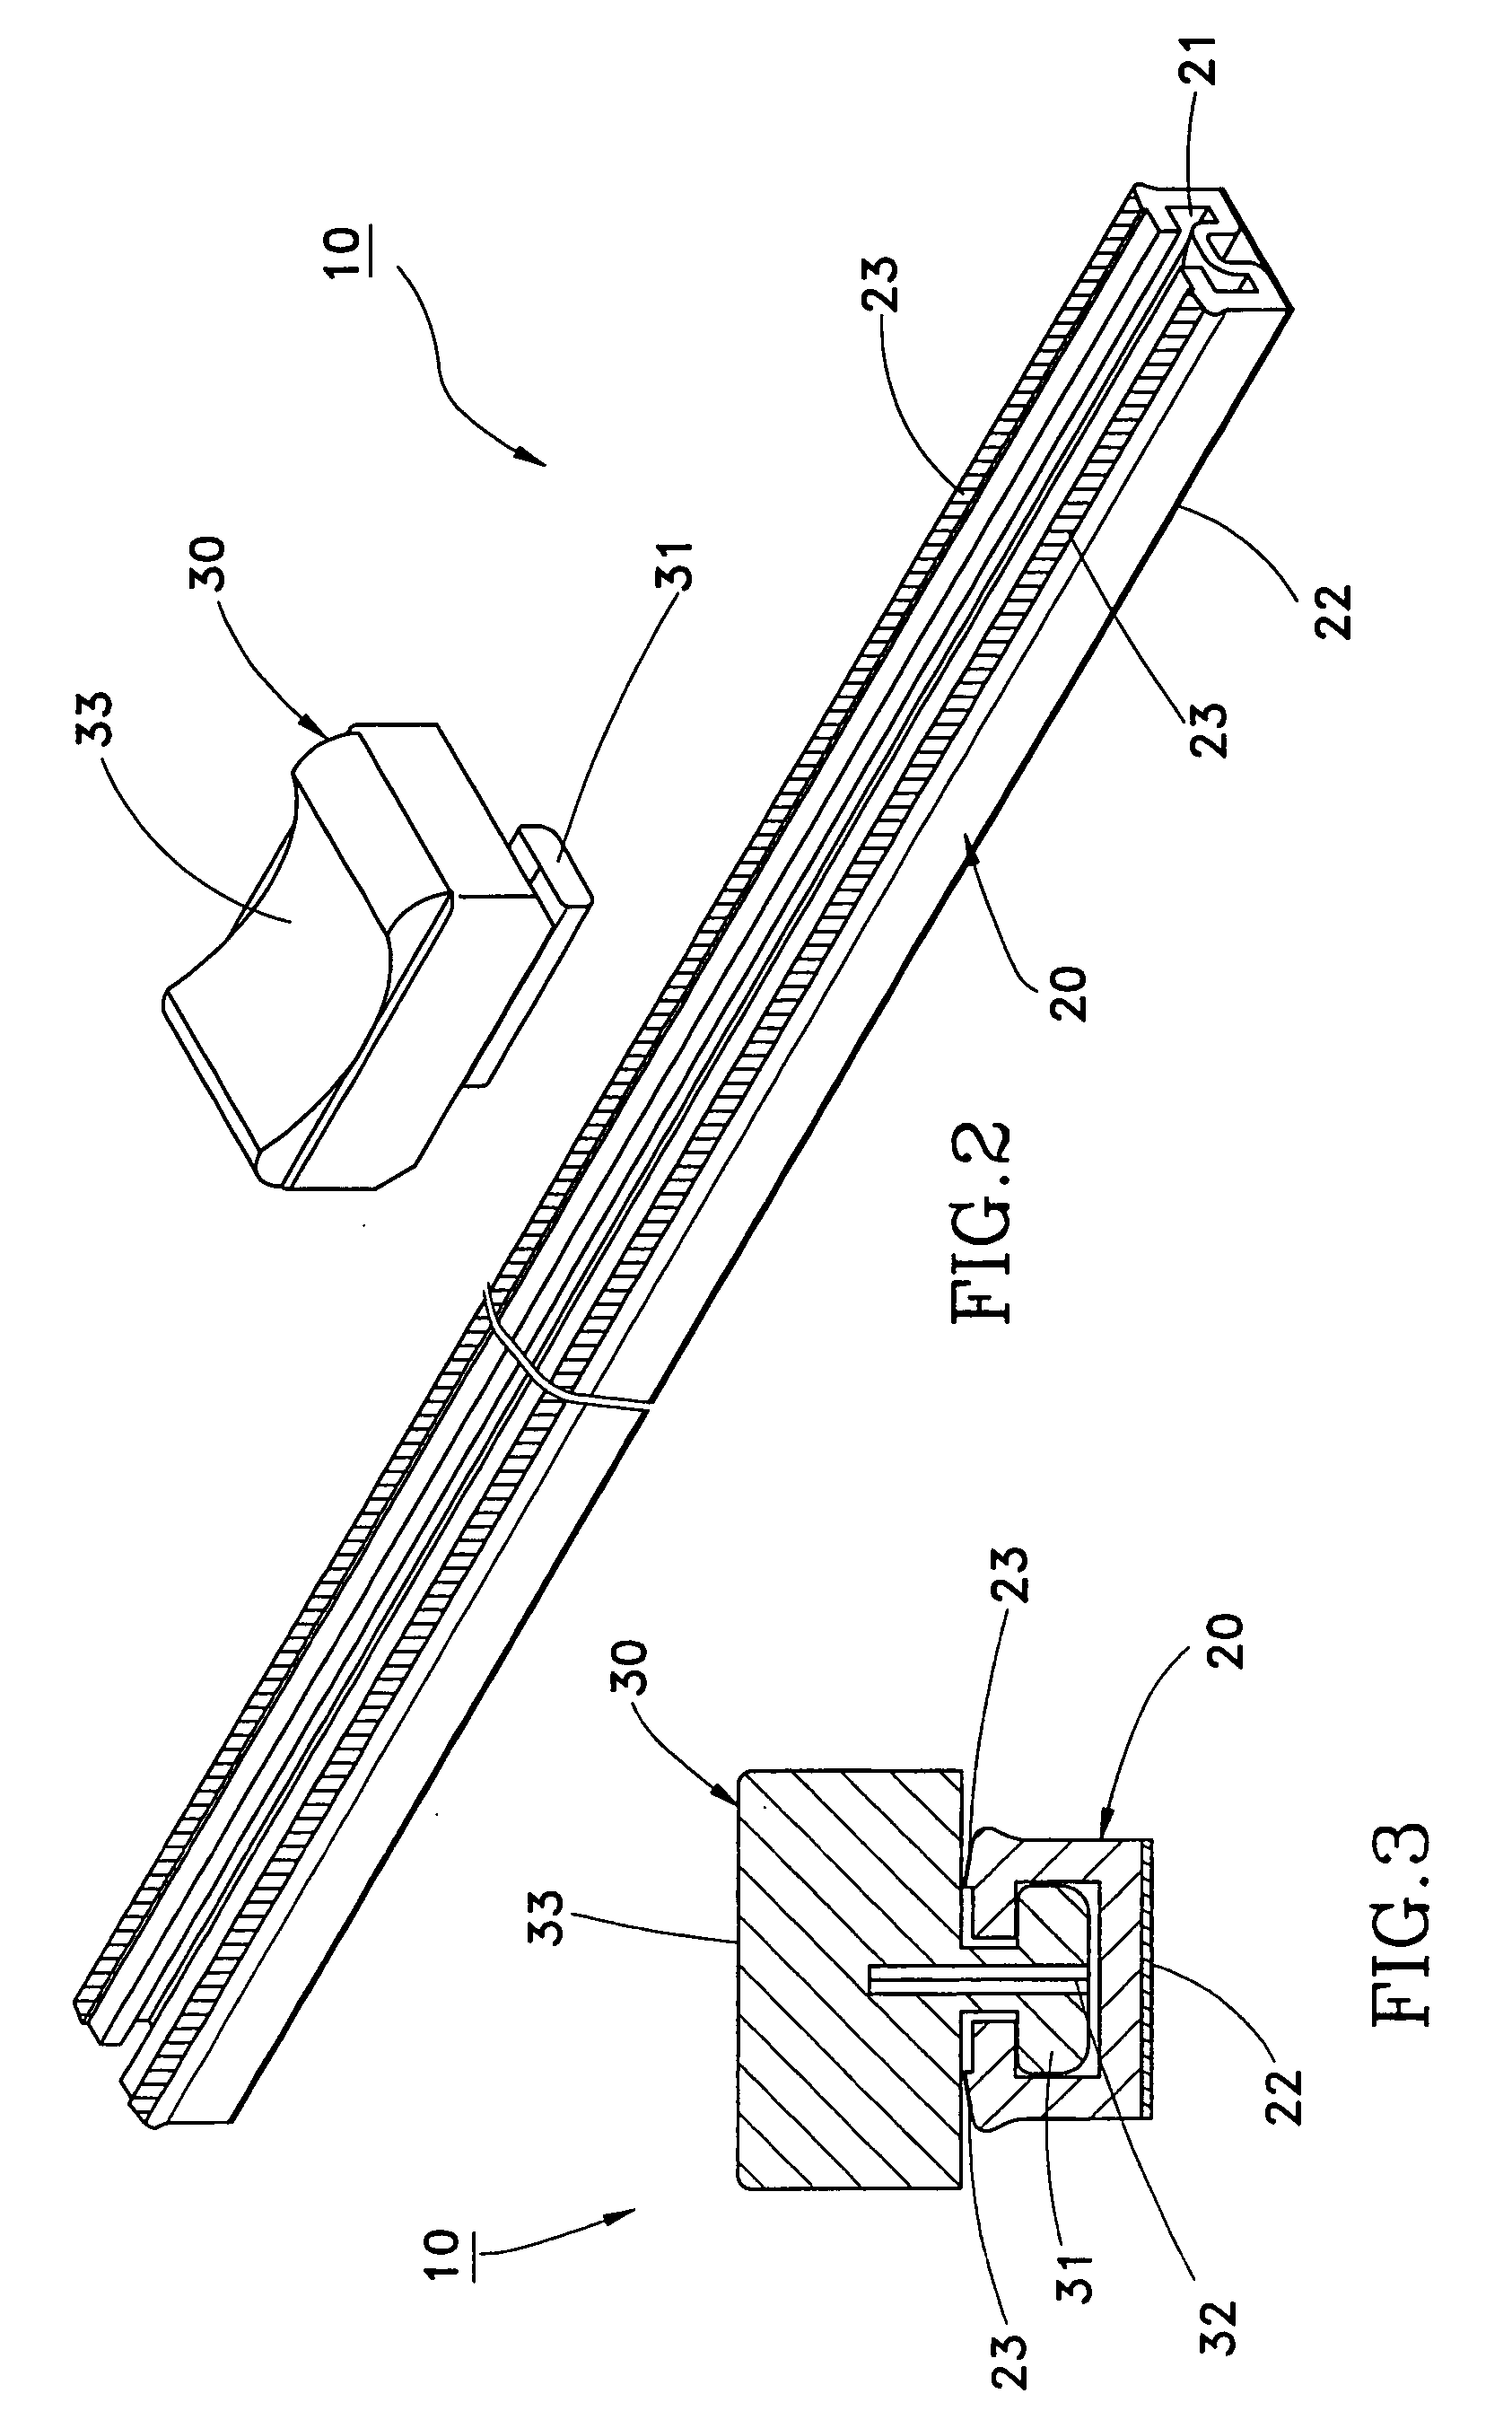 Wrap film cutting apparatus